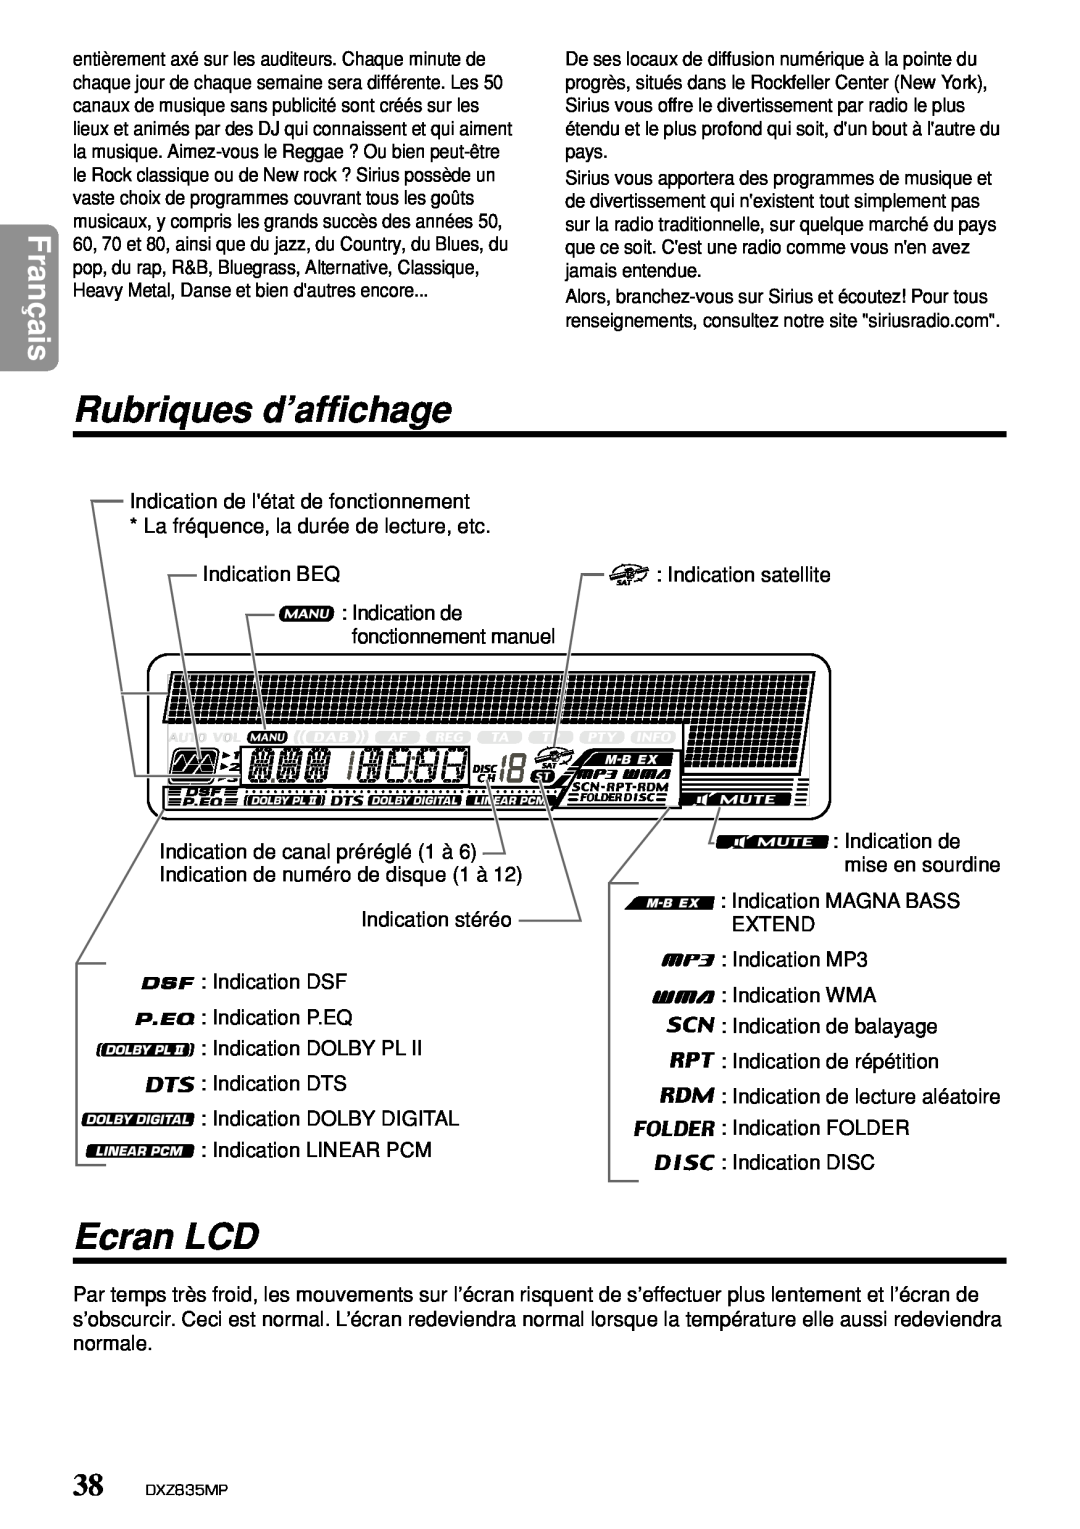 Clarion DXZ835MP owner manual Rubriques d’affichage, Ecran LCD, Français 